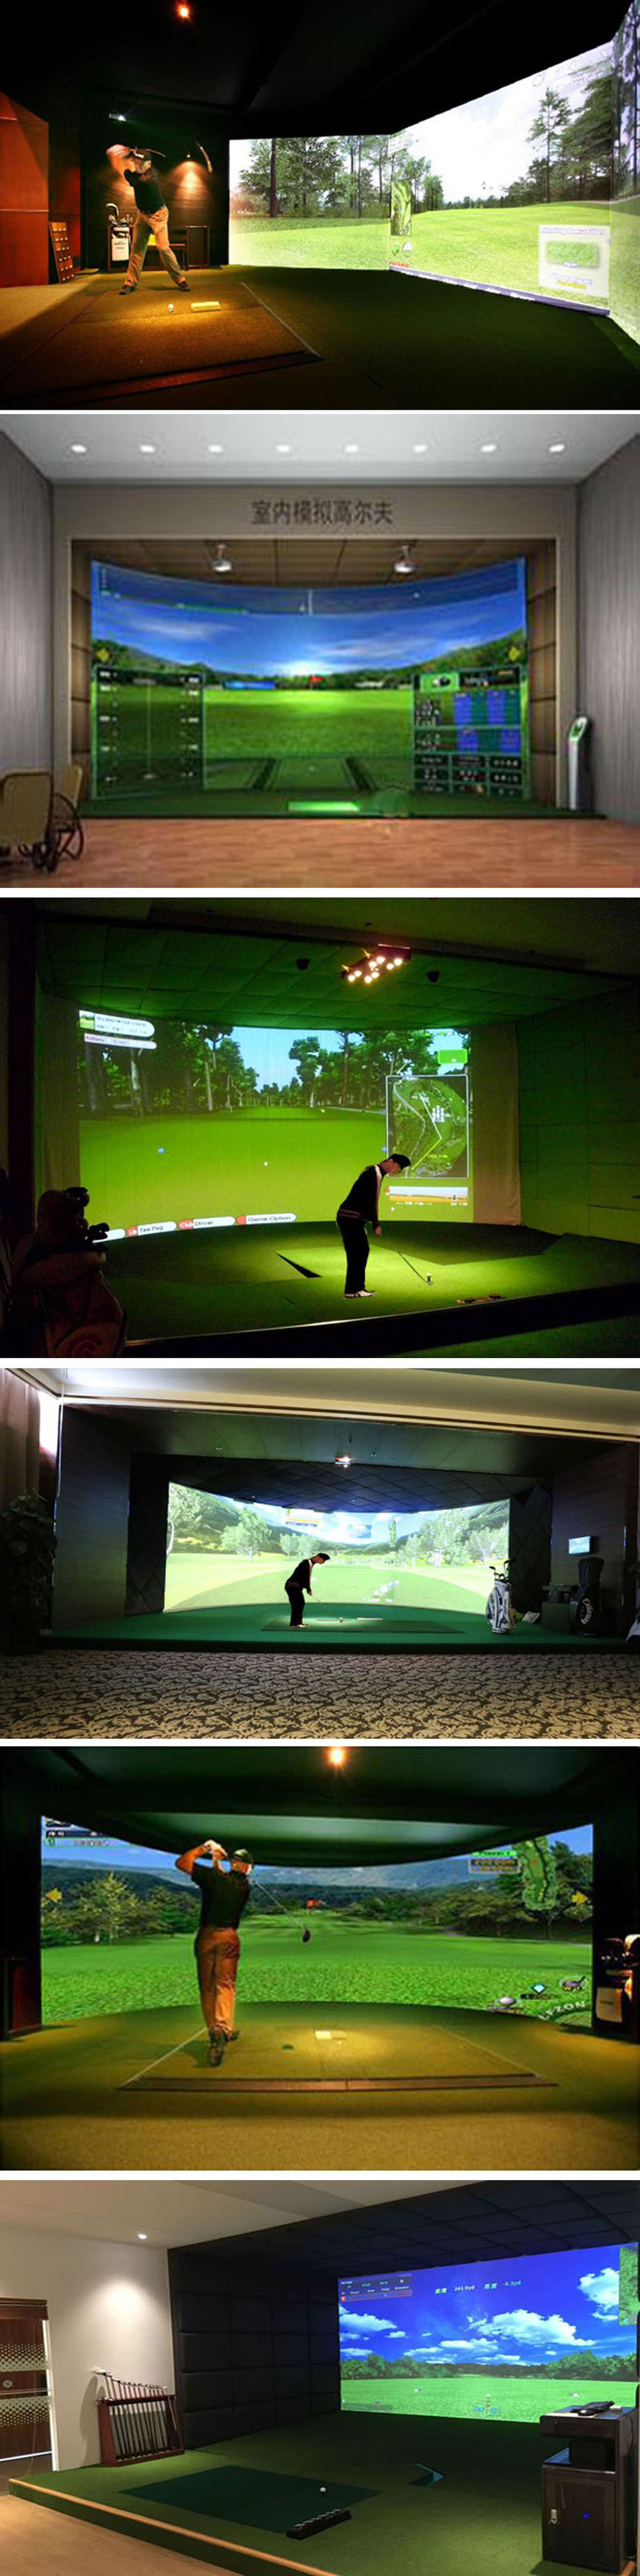 高尔夫模拟球场 二.jpg